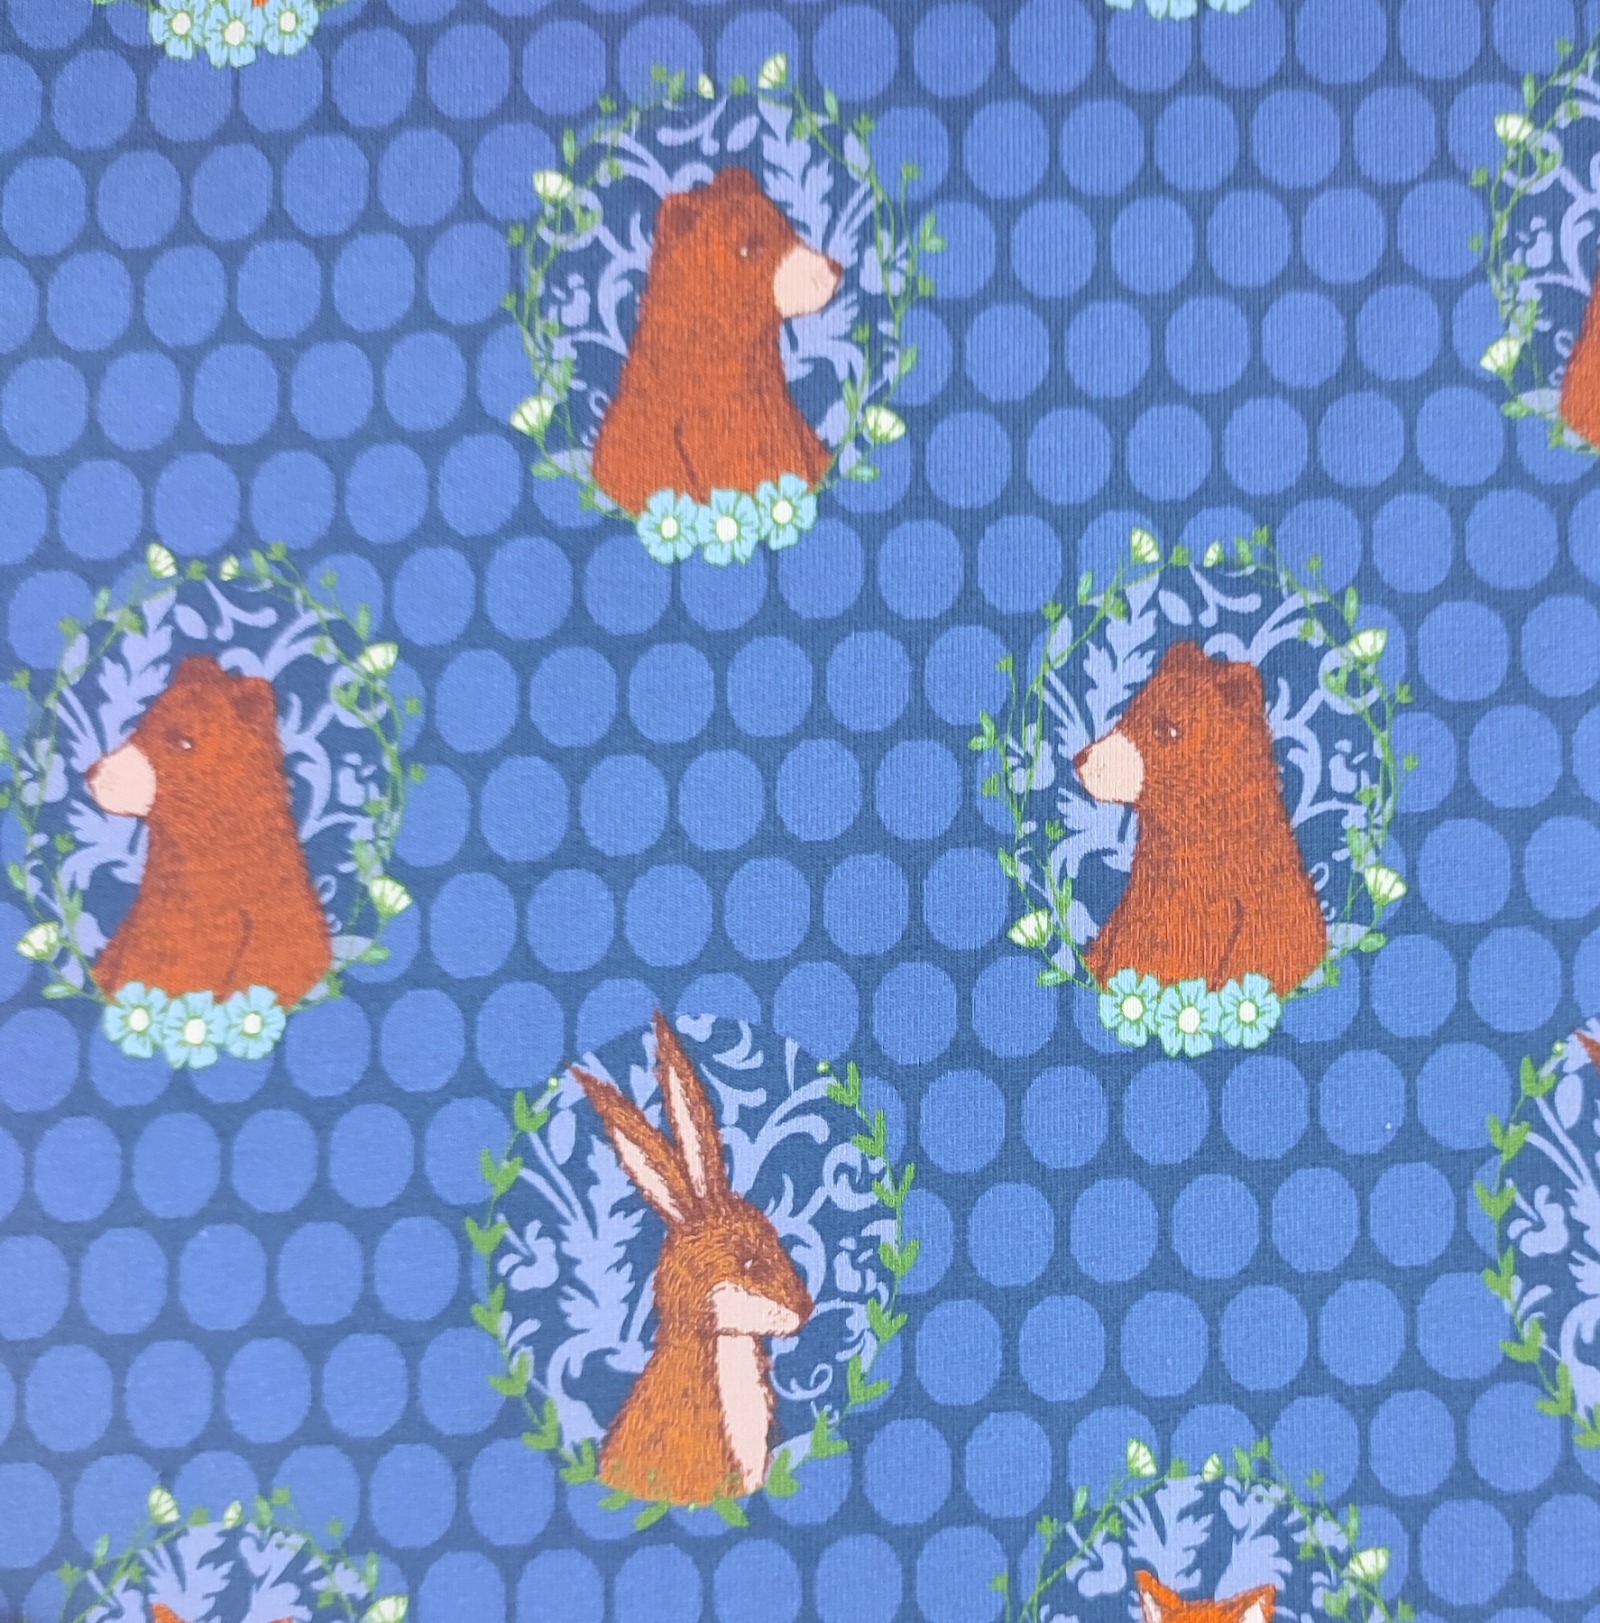 French Terry 1596 EUR Füchse Hasen Bären und Blumen auf blau gepunktet Sommersweat Stoff Meterware